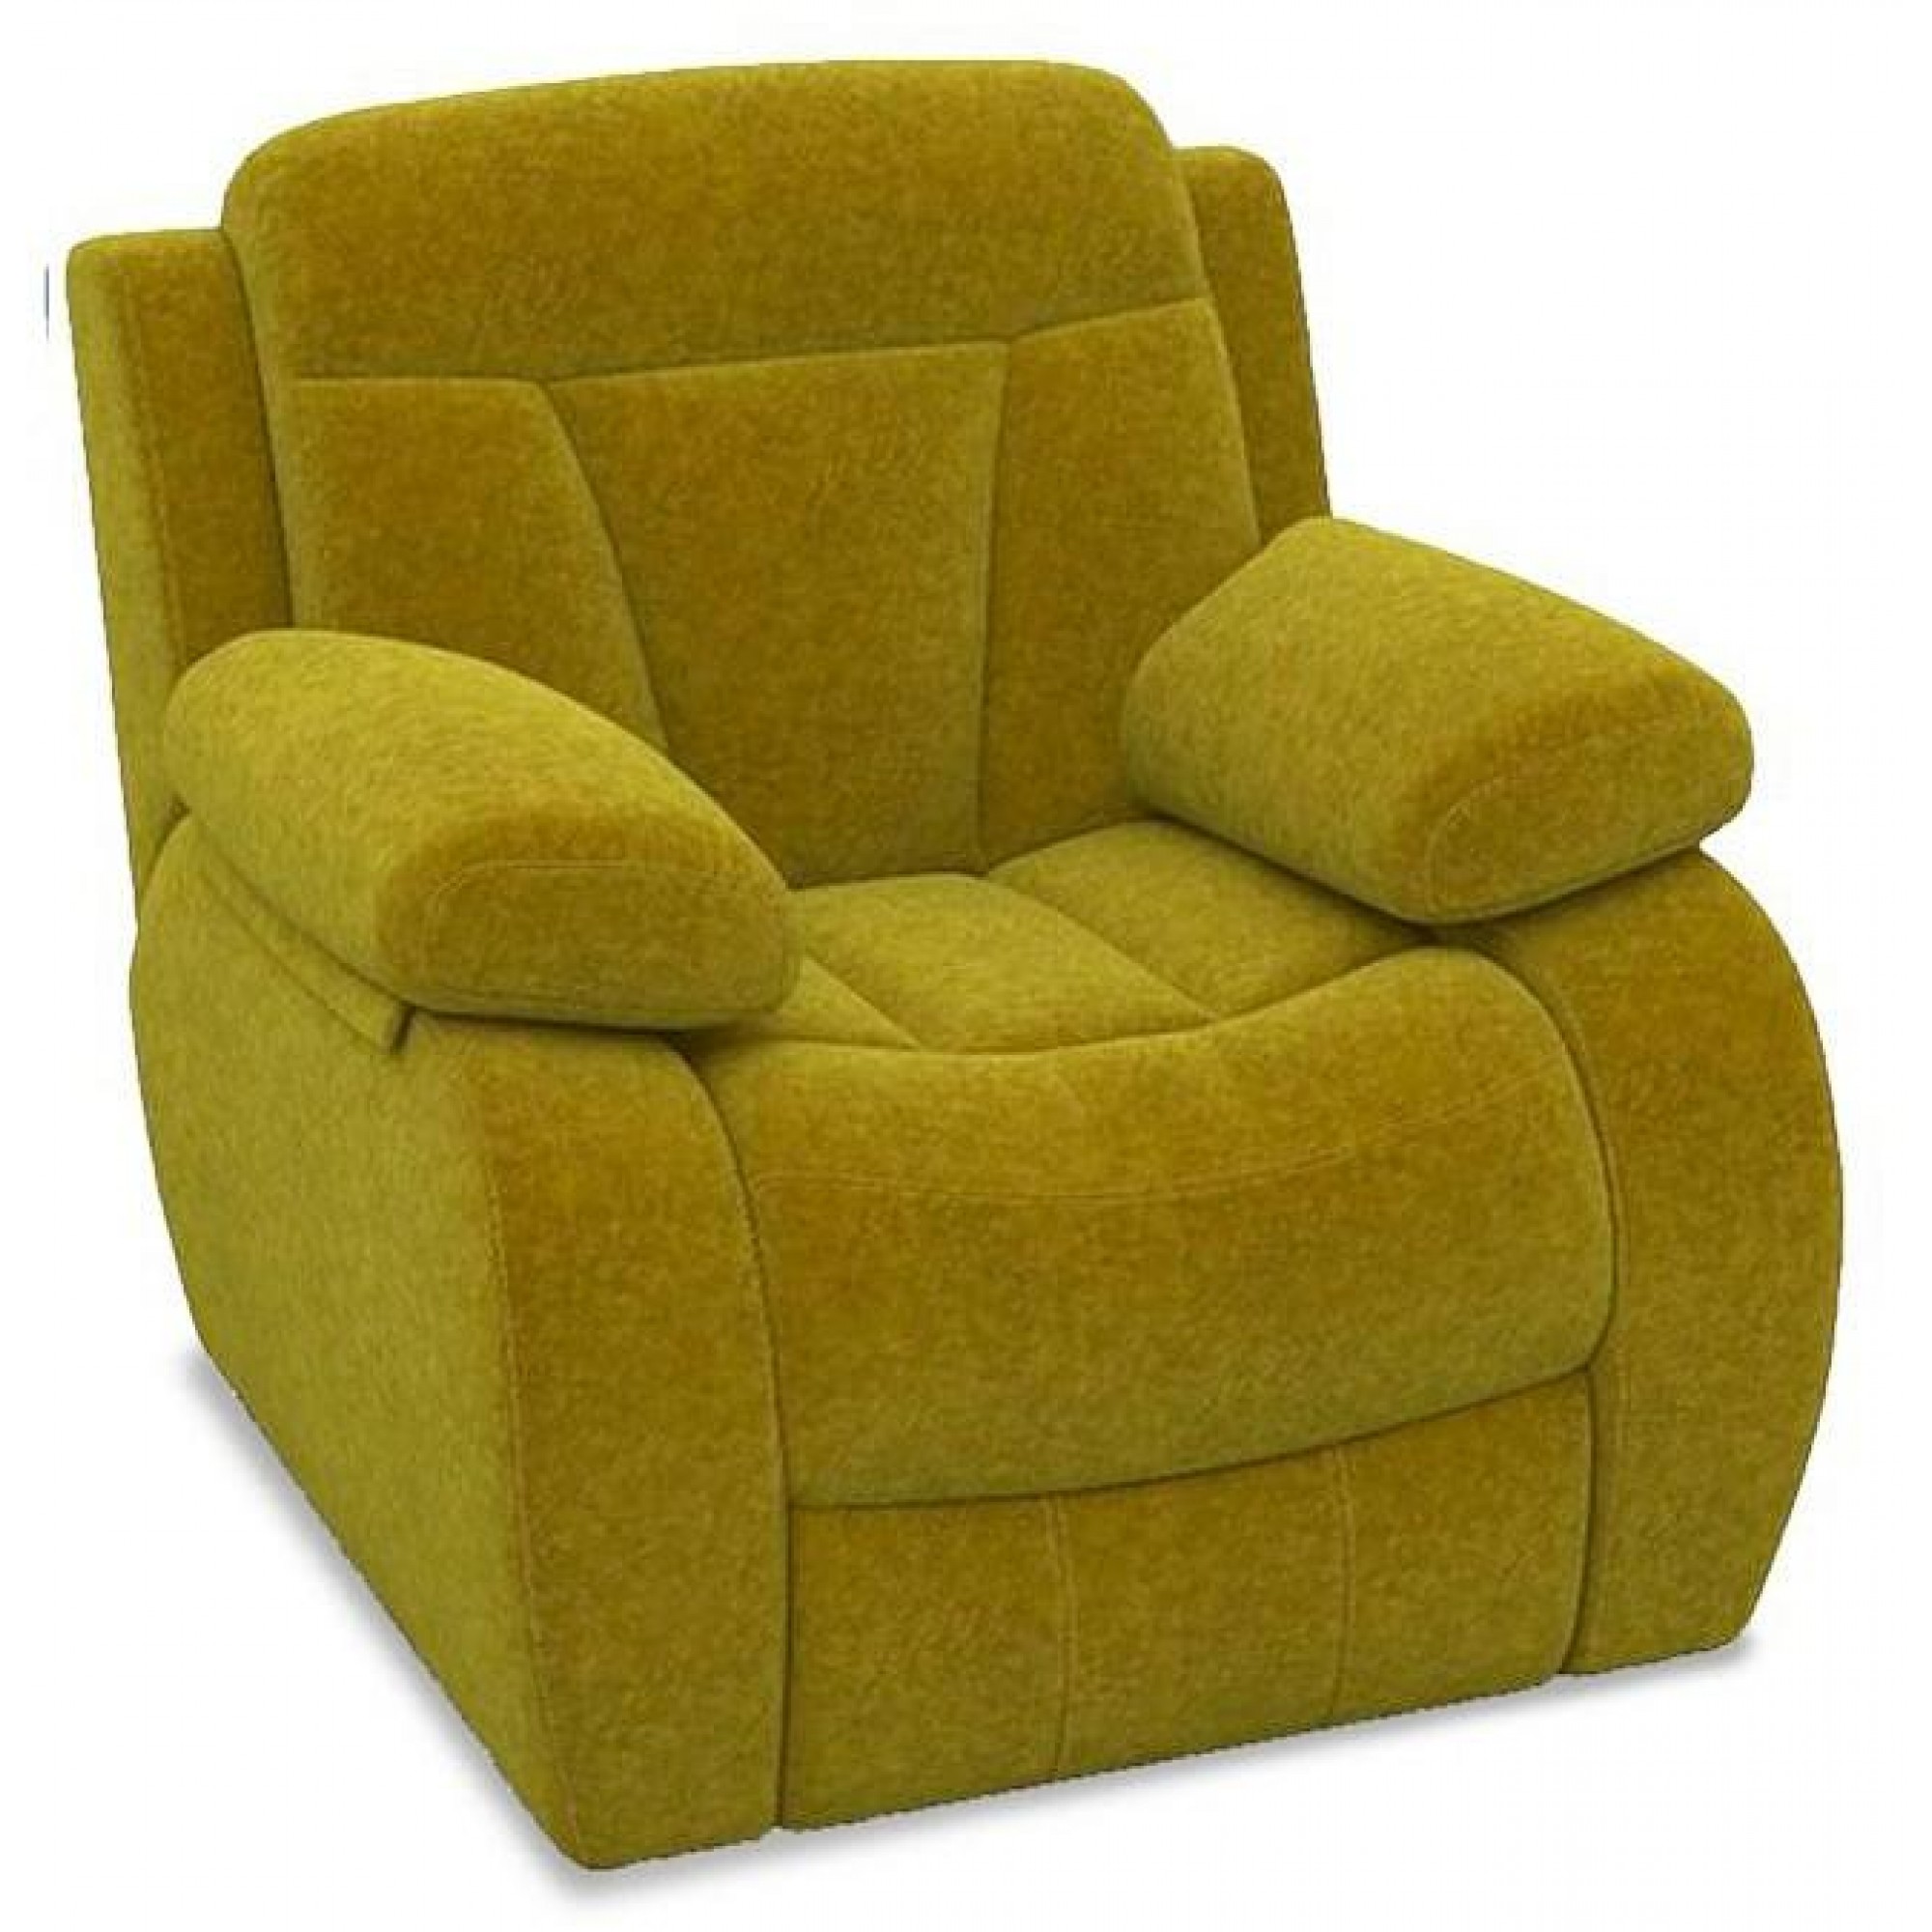 Кресло-качалка Манчестер желтый ORM_104-107-102-MANCHESTER-11